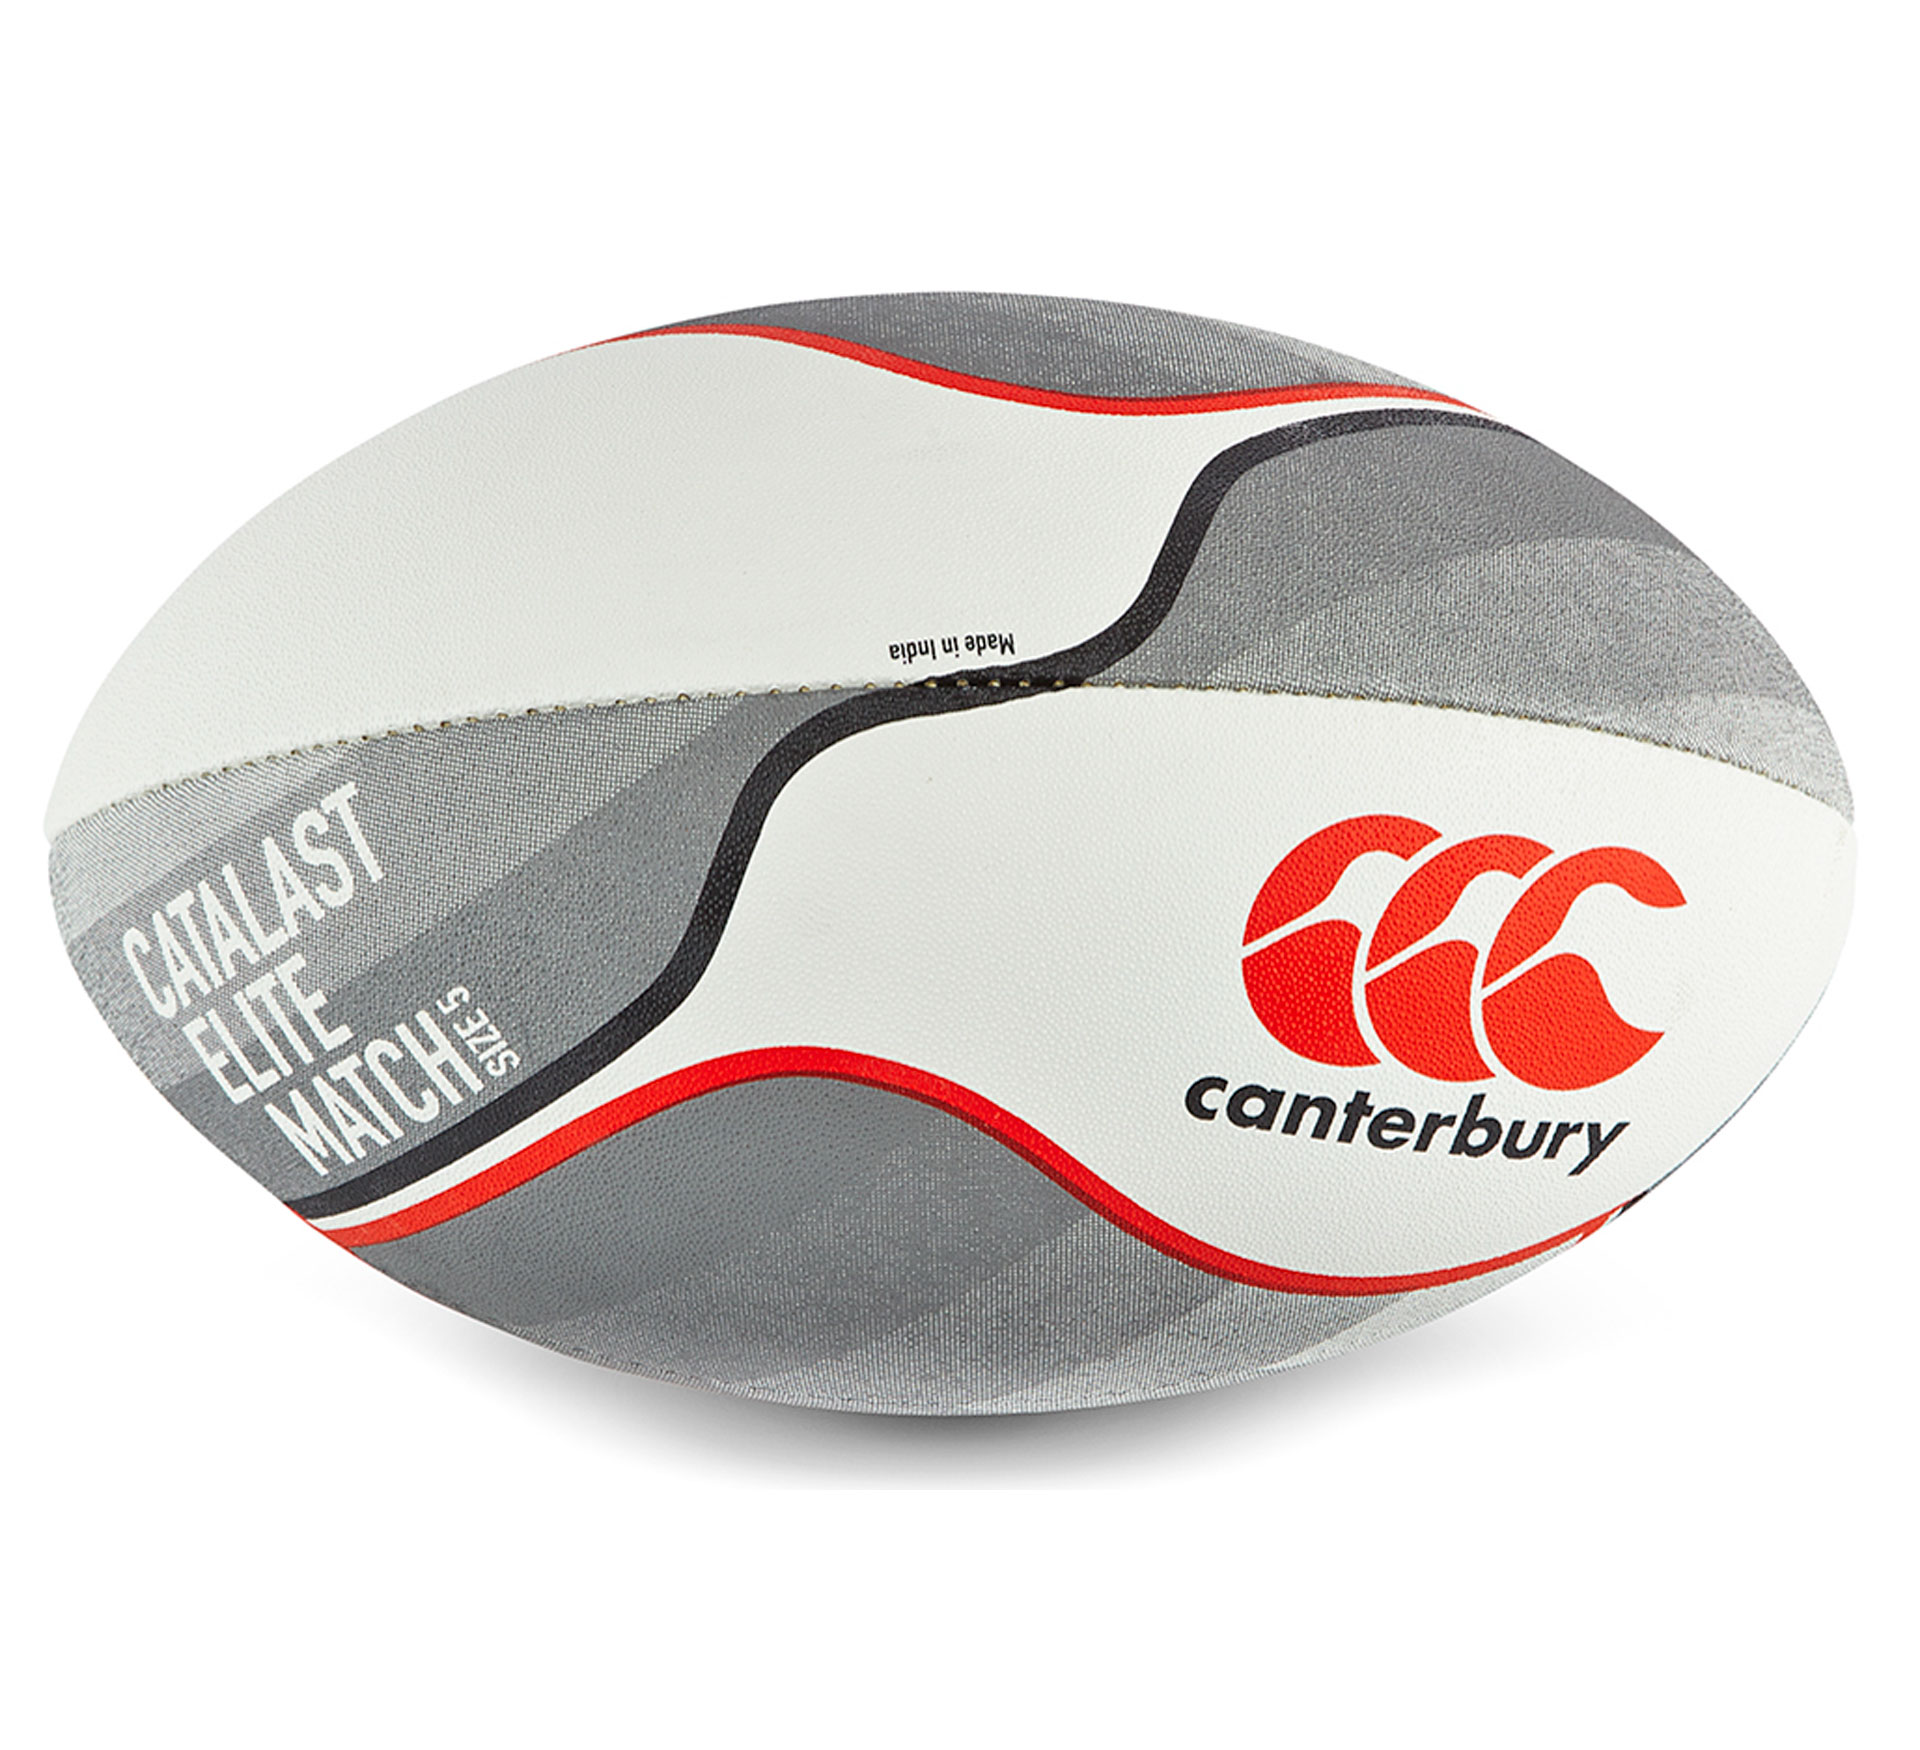 Ballon de rugby Canterbury Catalast Elite